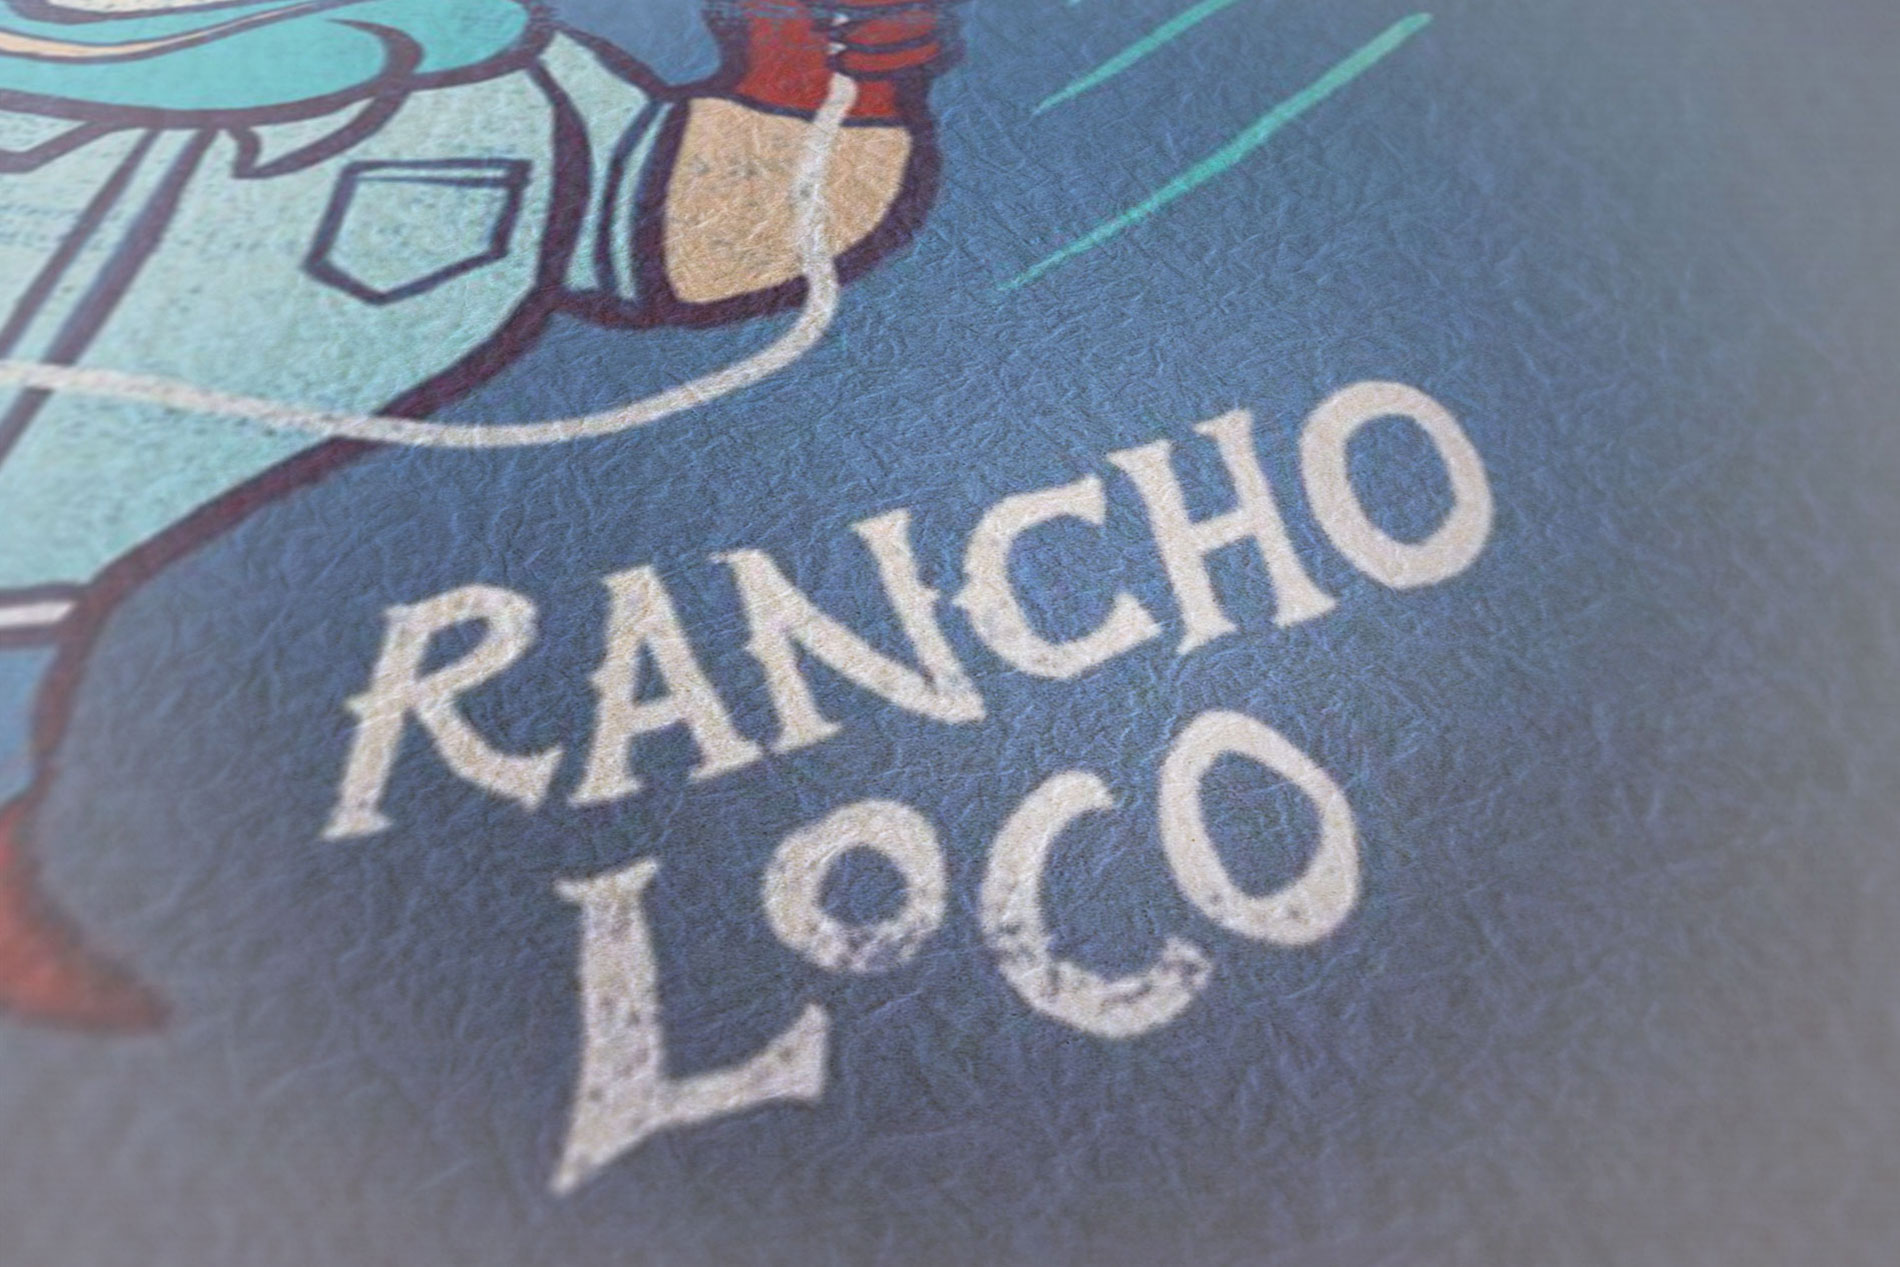 rancho loco cartoon